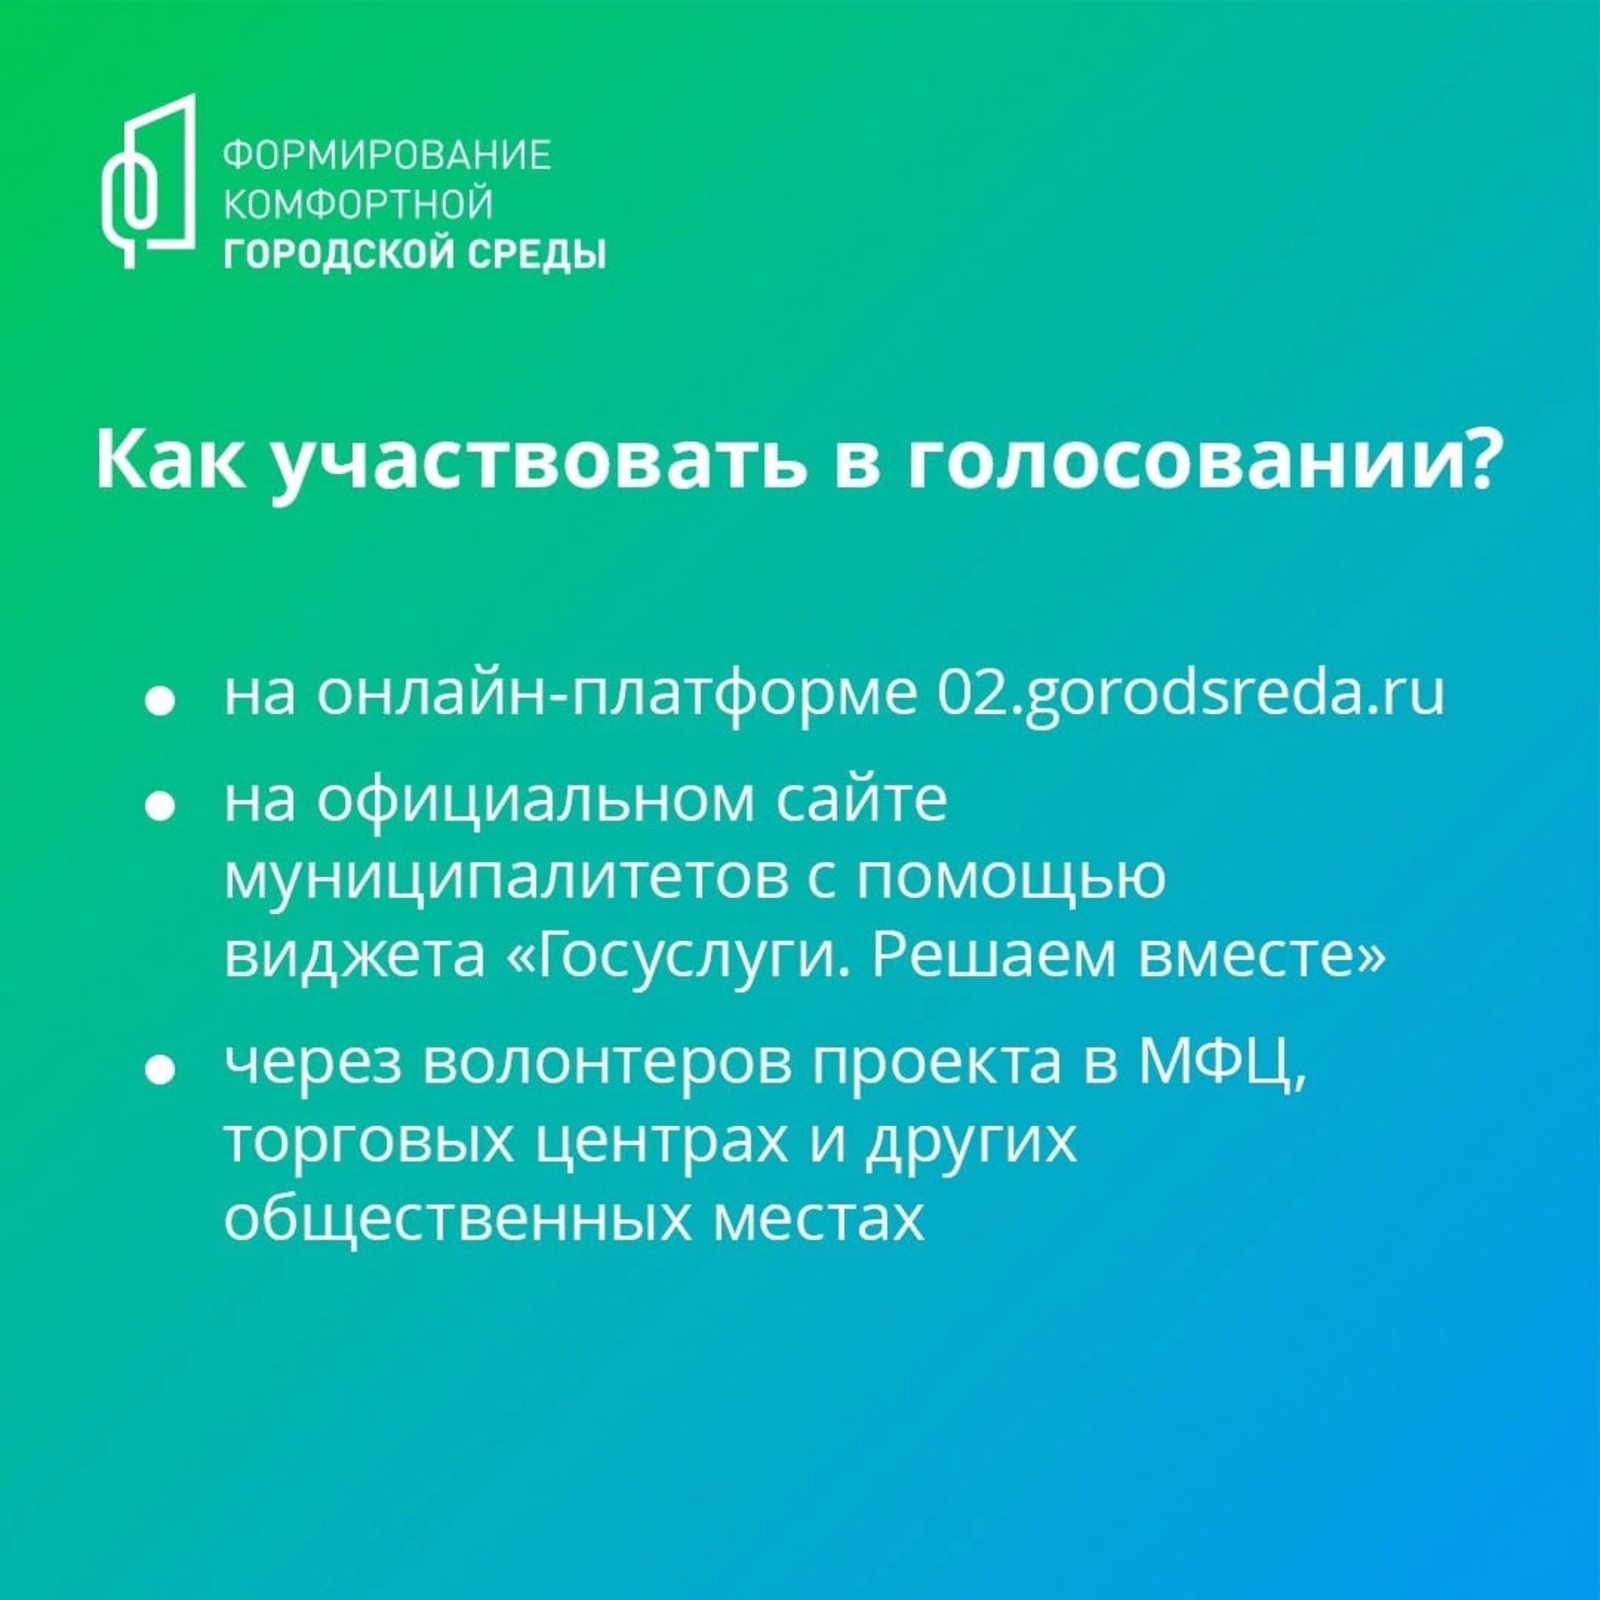 Сегодня, 30 мая, завершается второе Всероссийское онлайн-голосование по выбору объектов по отбору общественных территорий для благоустройства